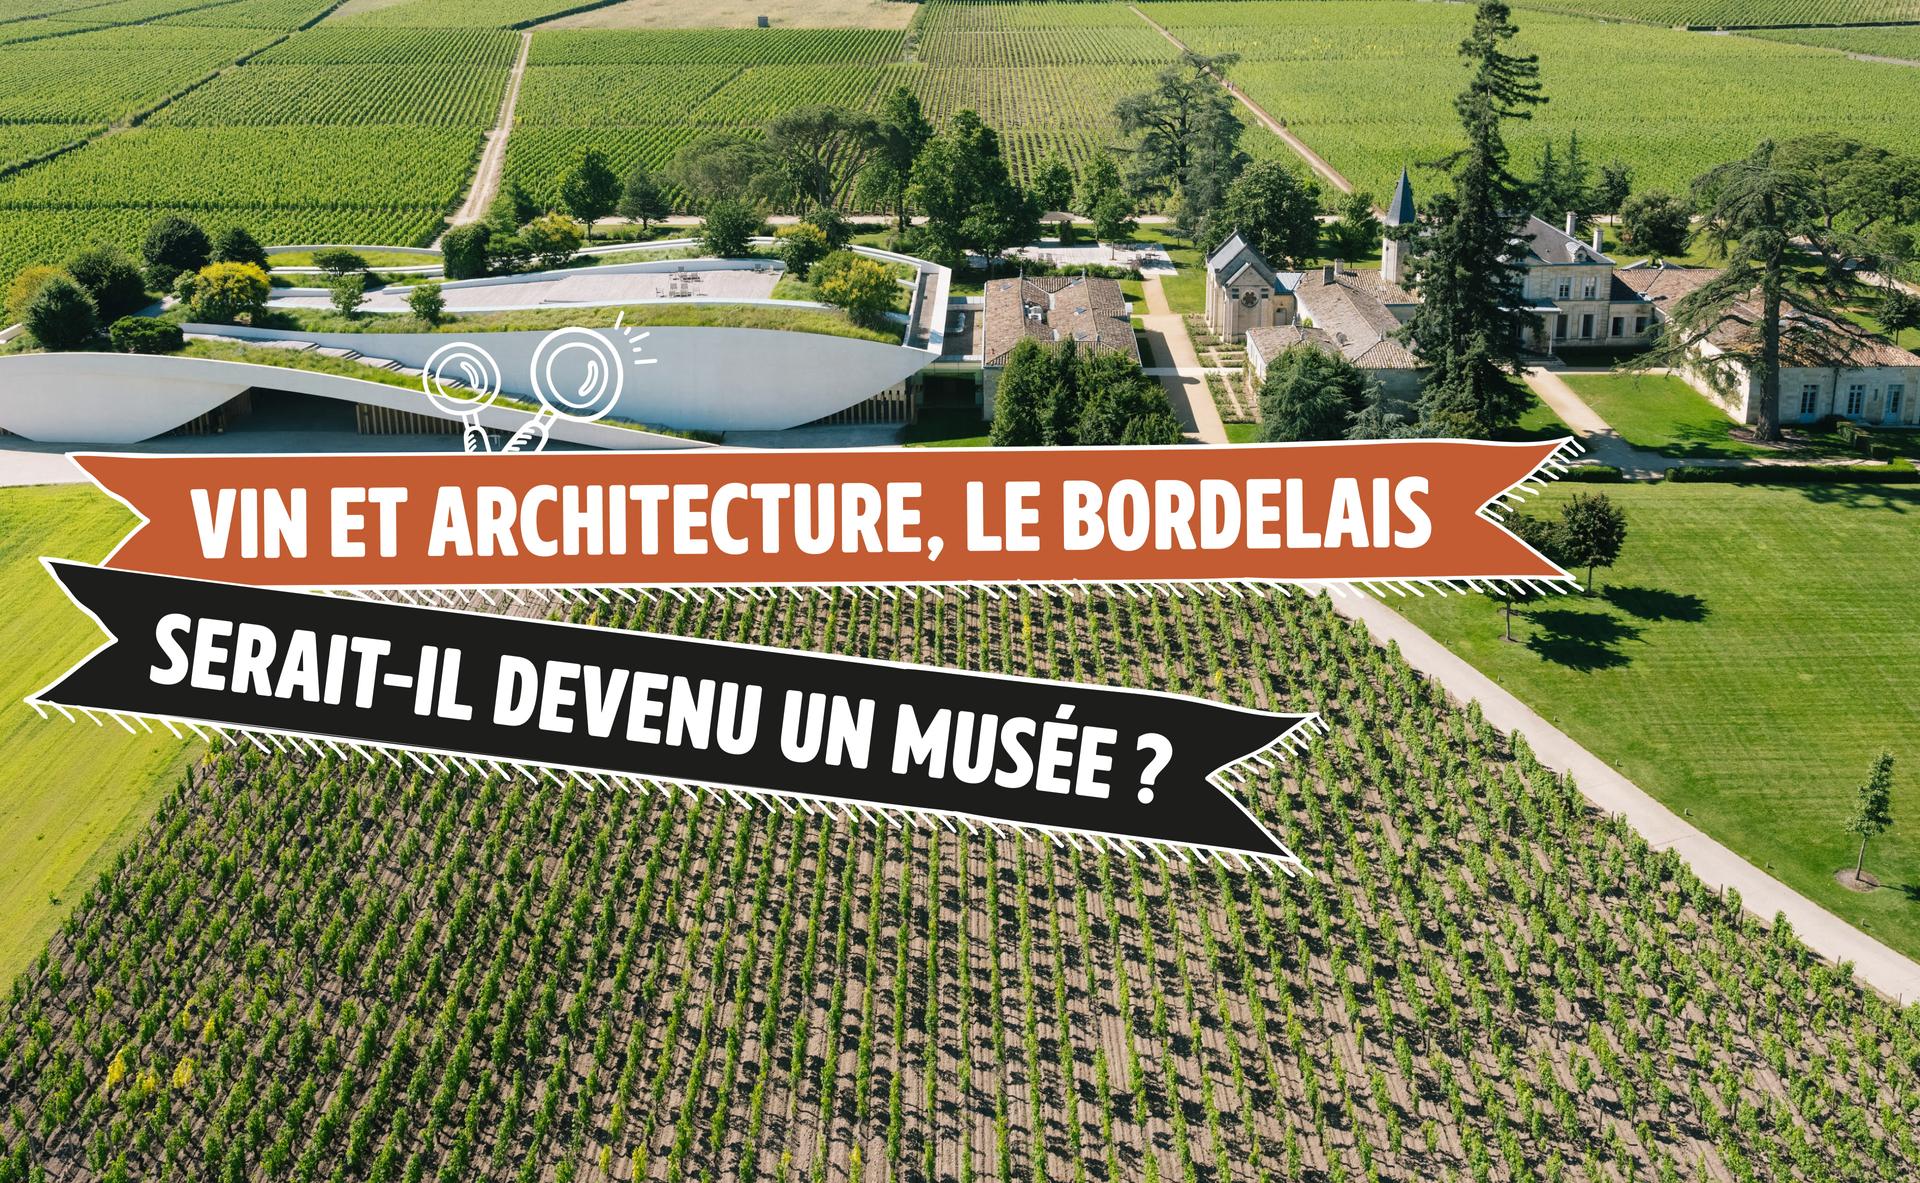 Vin et architecture contemporaine, le Bordelais serait-il devenu un musée ?